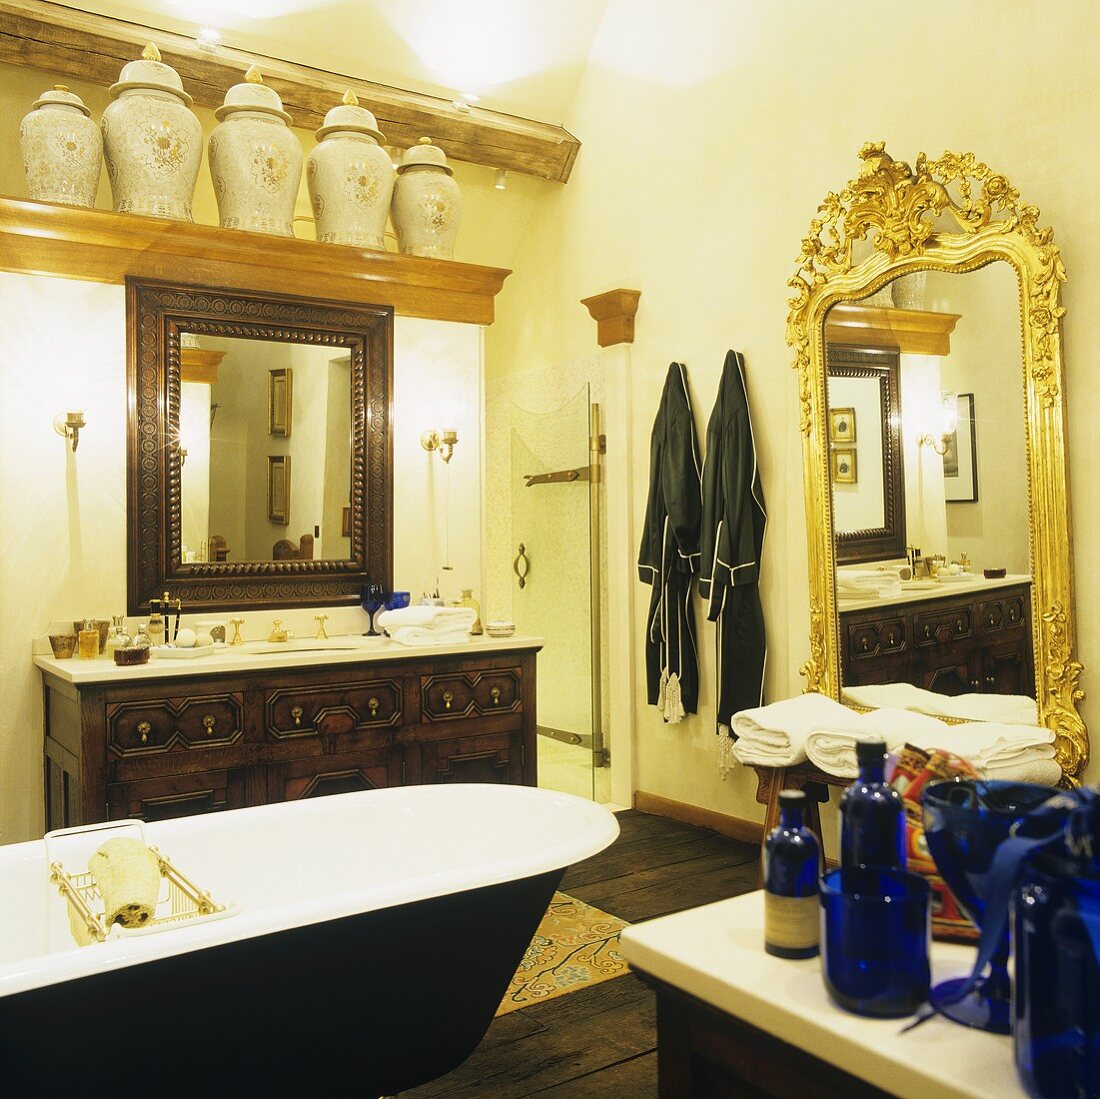 Ländliches Bad mit freistehender Badewanne vor Waschtisch mit Holzschrank und Wandspiegel im Goldrahmen